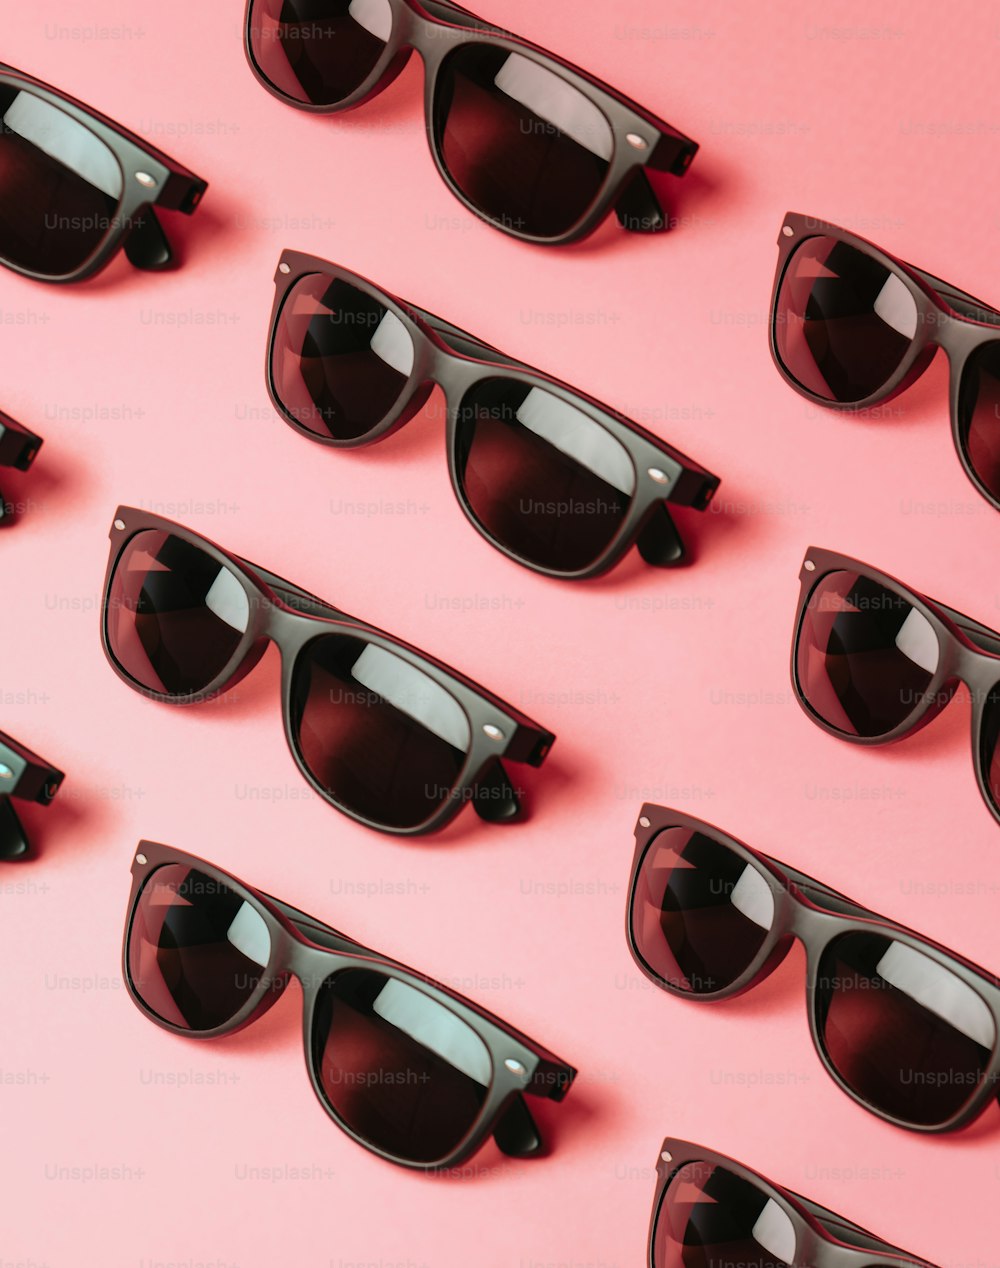 Un montón de gafas de sol sentadas encima de una superficie rosa